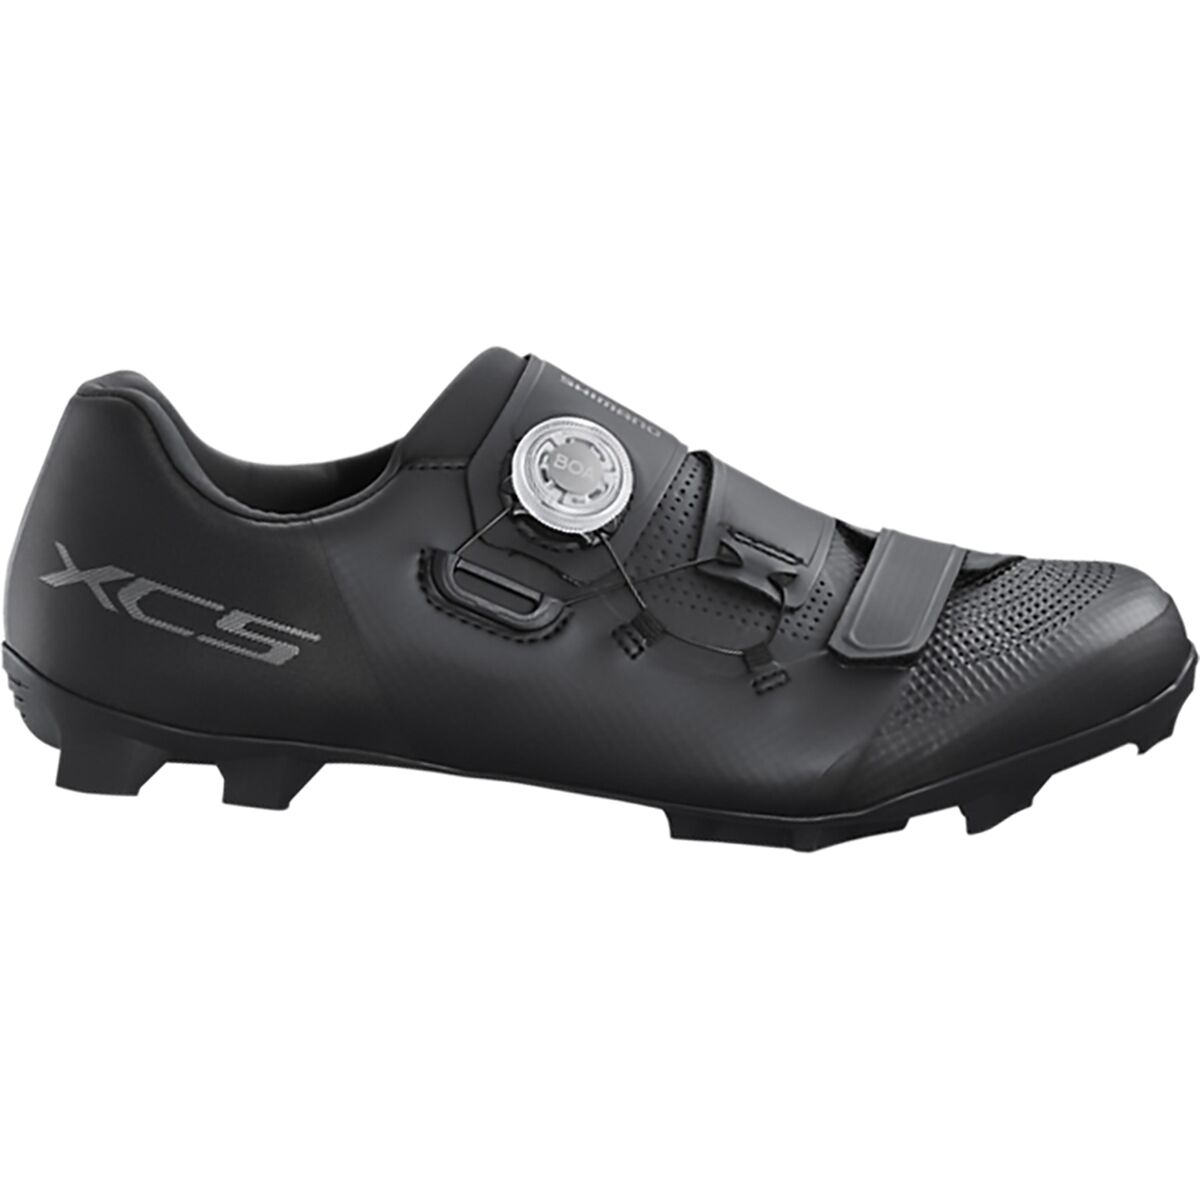 Shimano XC502 Mountain Bike Shoe - Men's Black, 47.0